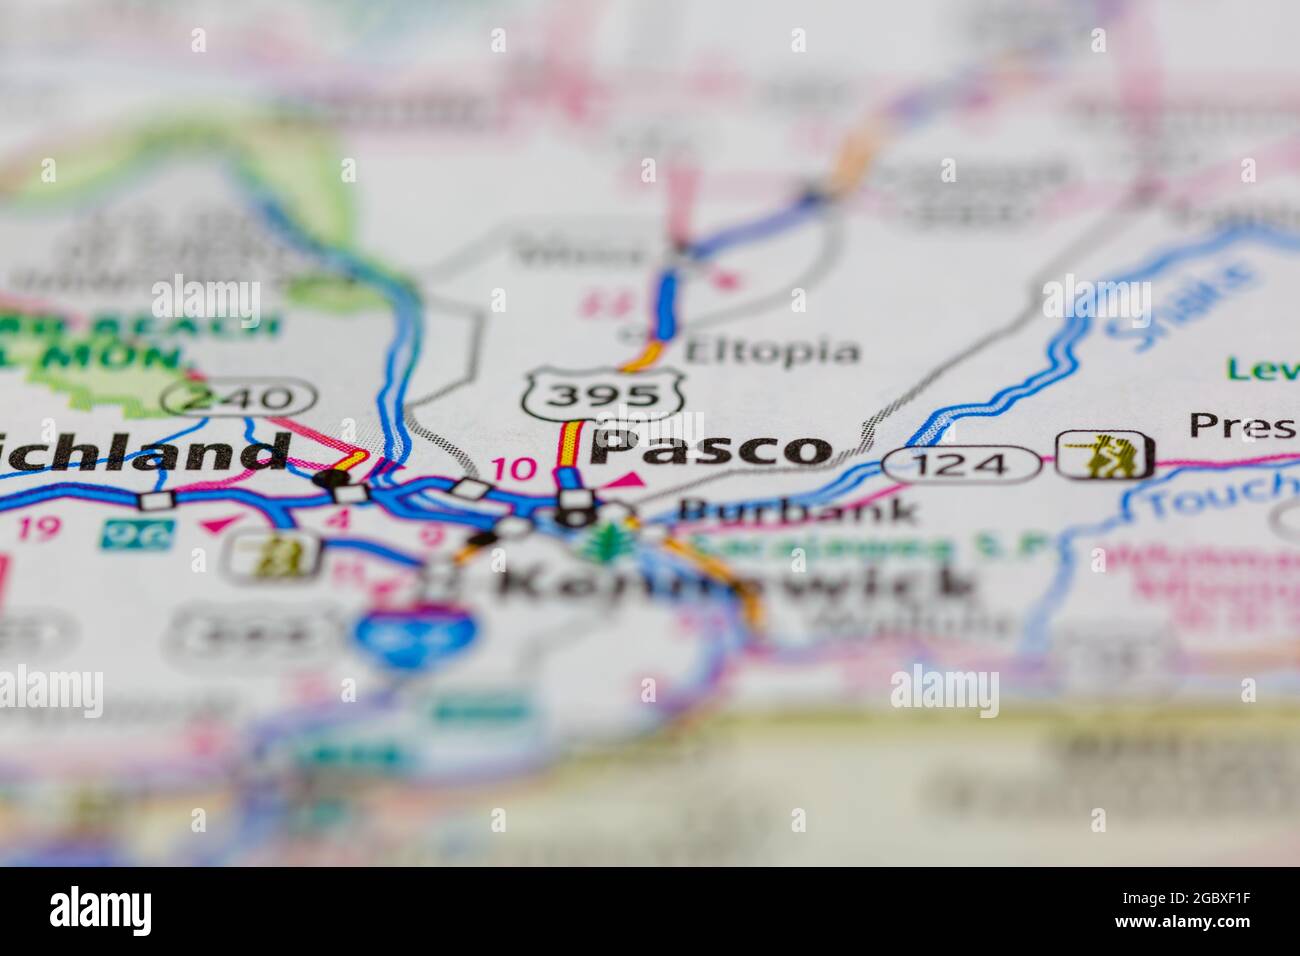 Pasco Washington state USA mostrato su una mappa stradale o su una mappa geografica Foto Stock